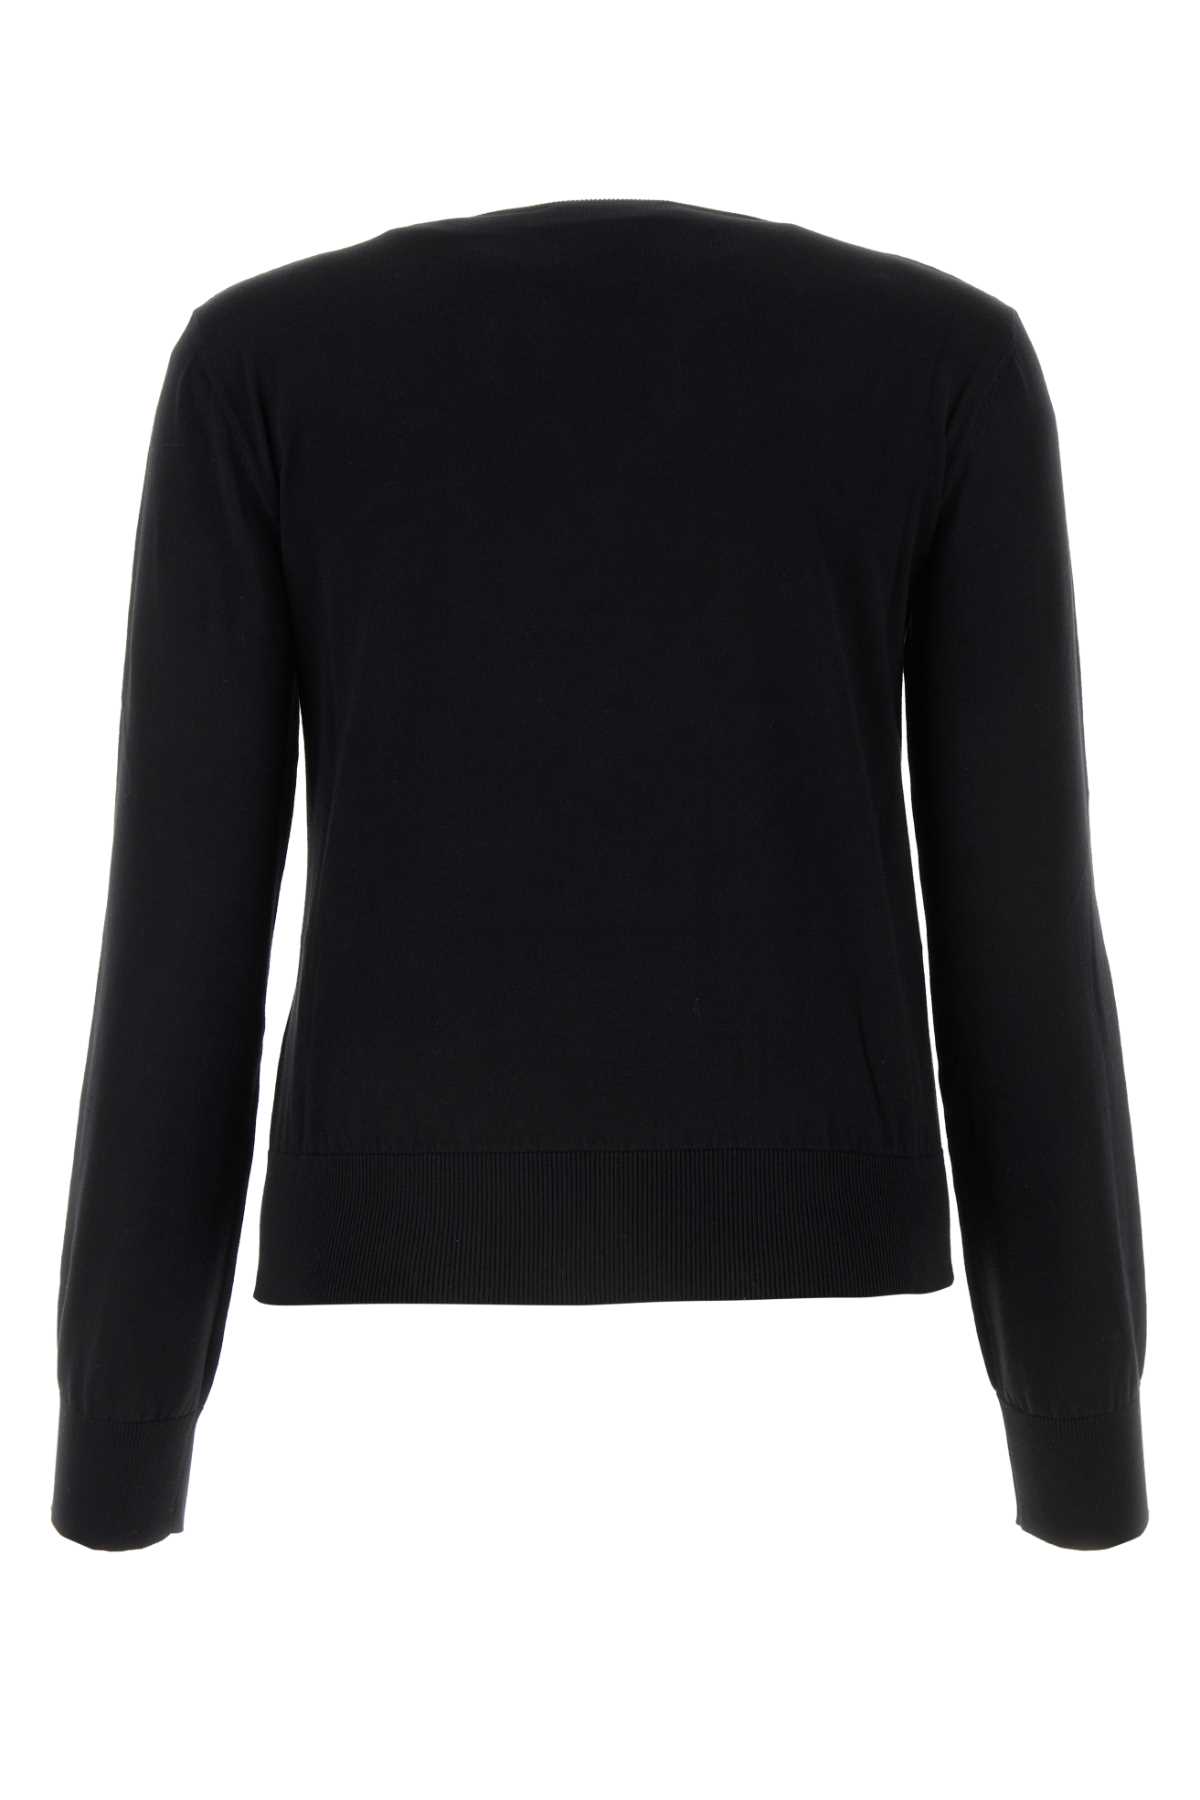 Shop Dsquared2 Black Cotton Sweater